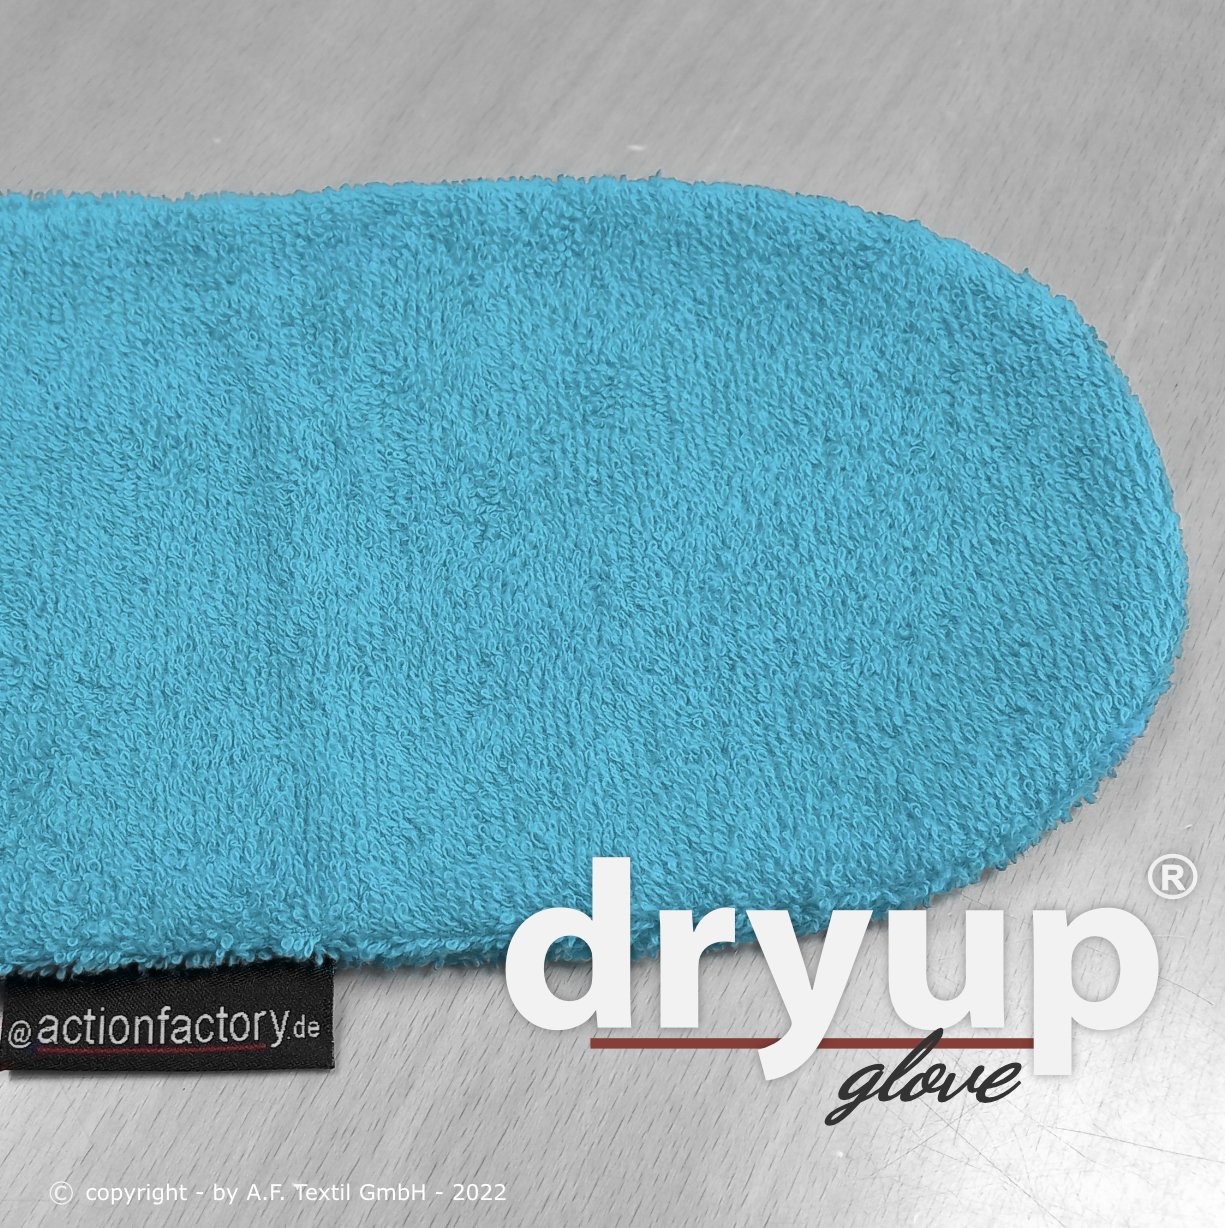 Dryup® glove cyan